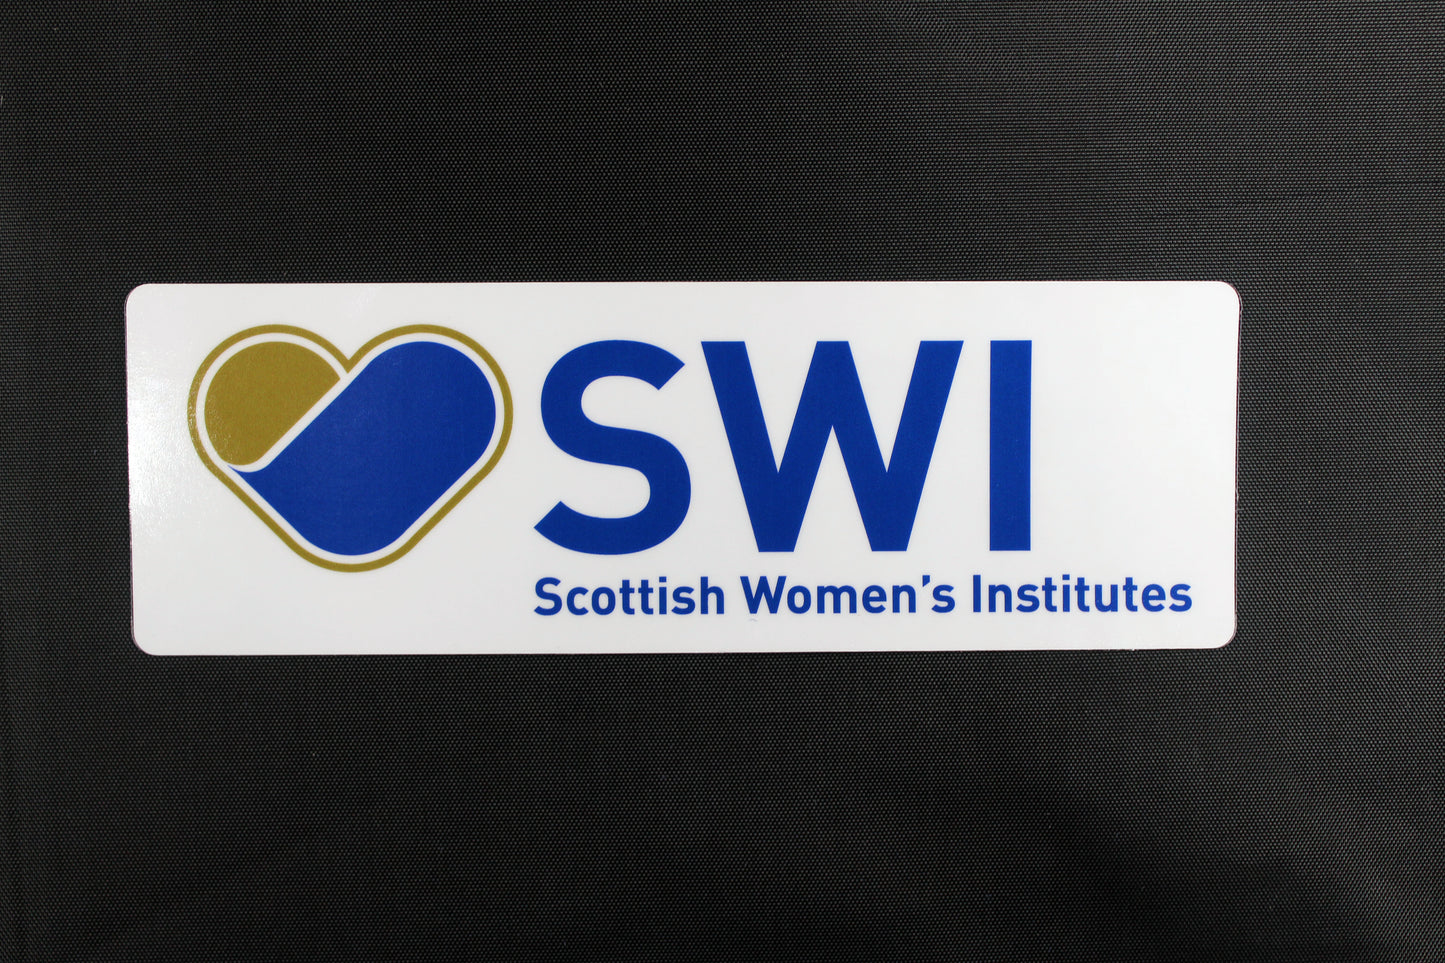 SWI Window Sticker